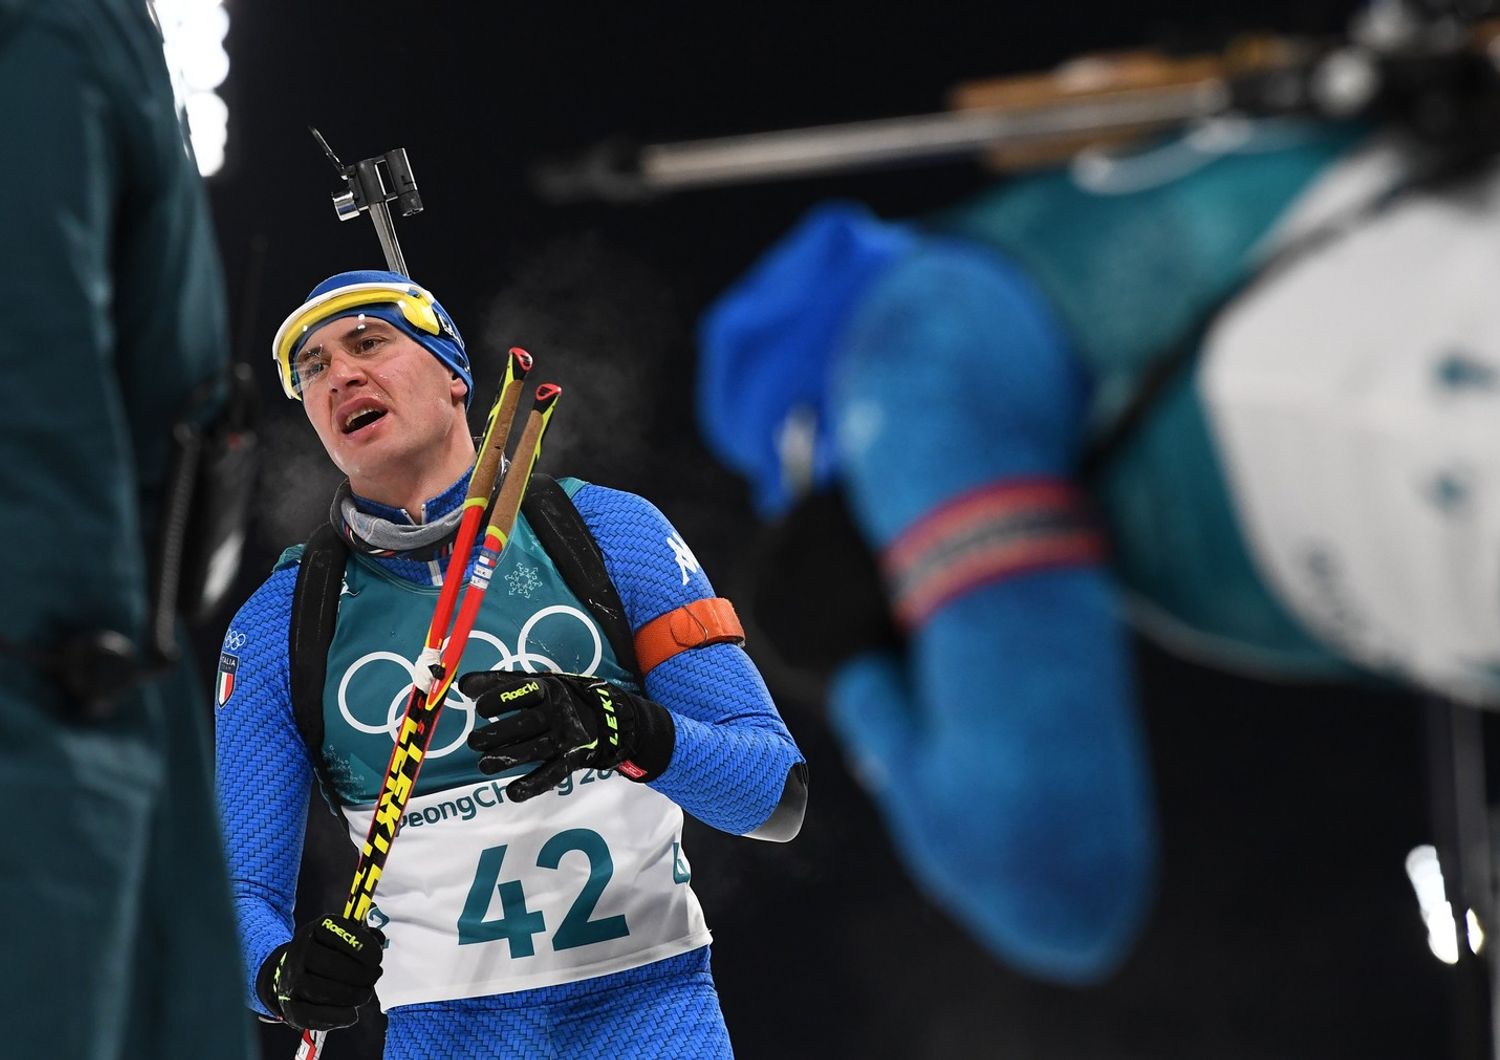 Giochi 2018: bronzo a Windisch,&nbsp;prima medaglia italiana nel biathlon